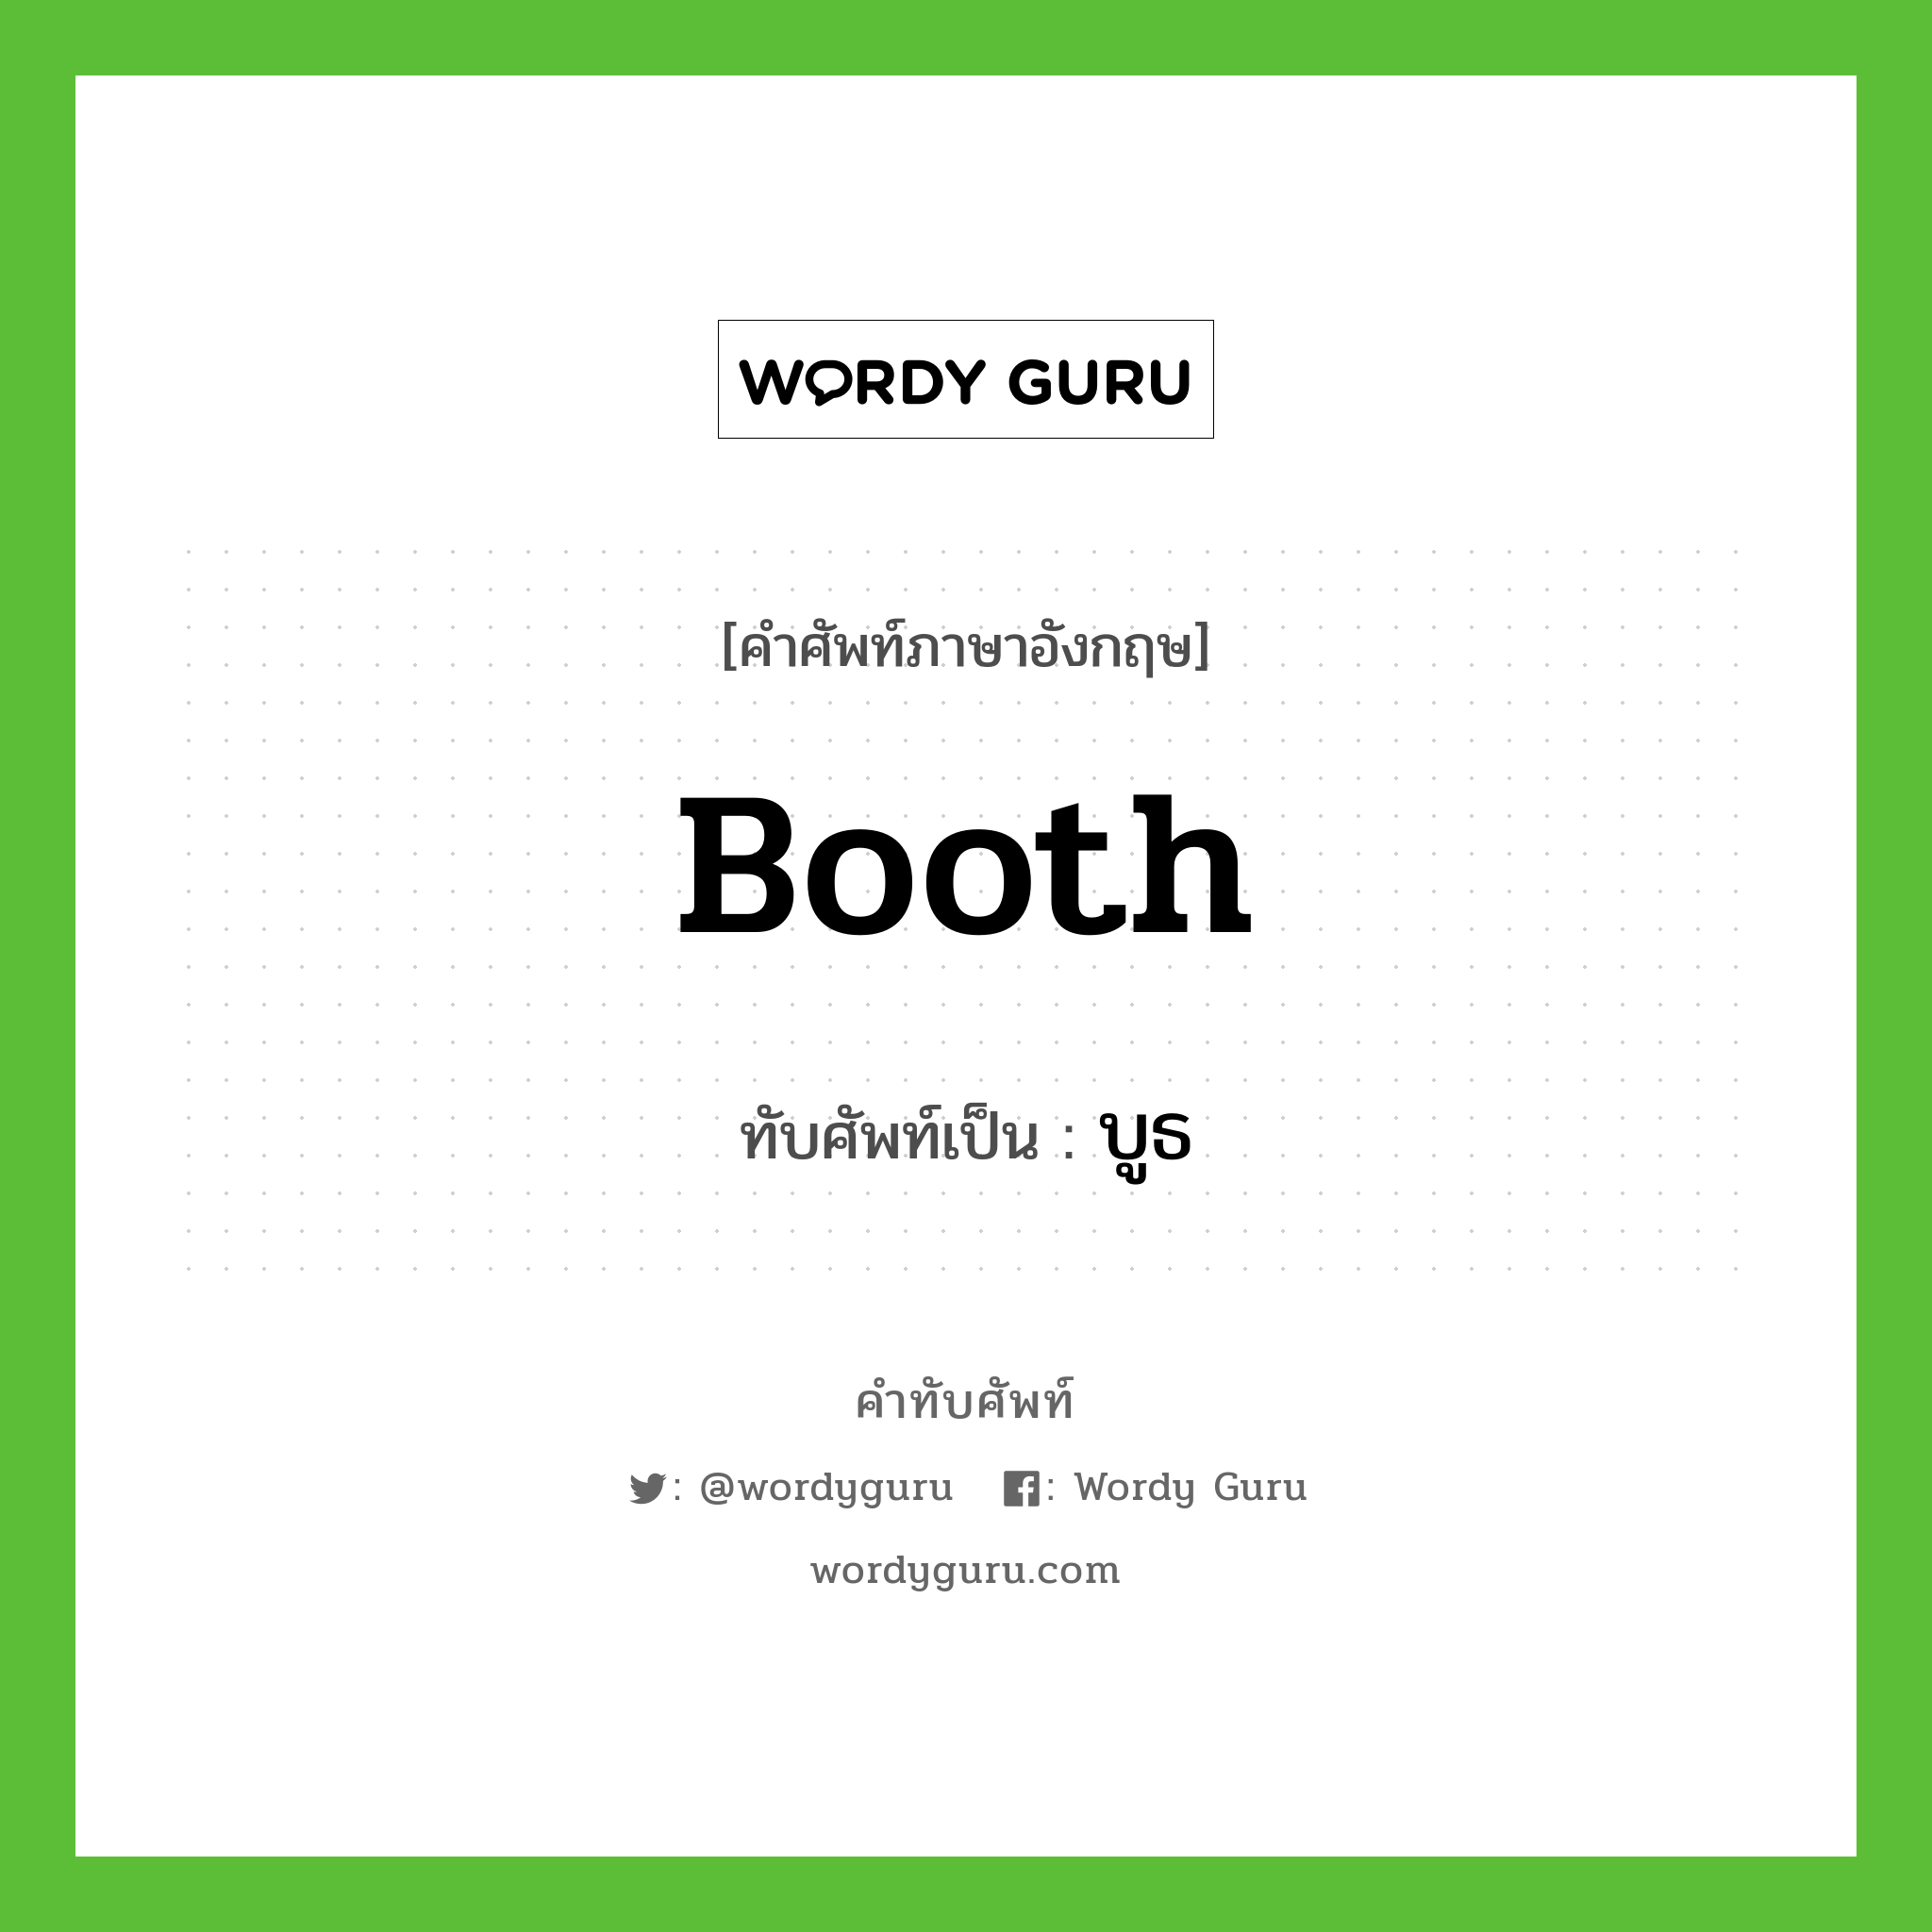 booth เขียนเป็นคำไทยว่าอะไร?, คำศัพท์ภาษาอังกฤษ booth ทับศัพท์เป็น บูธ